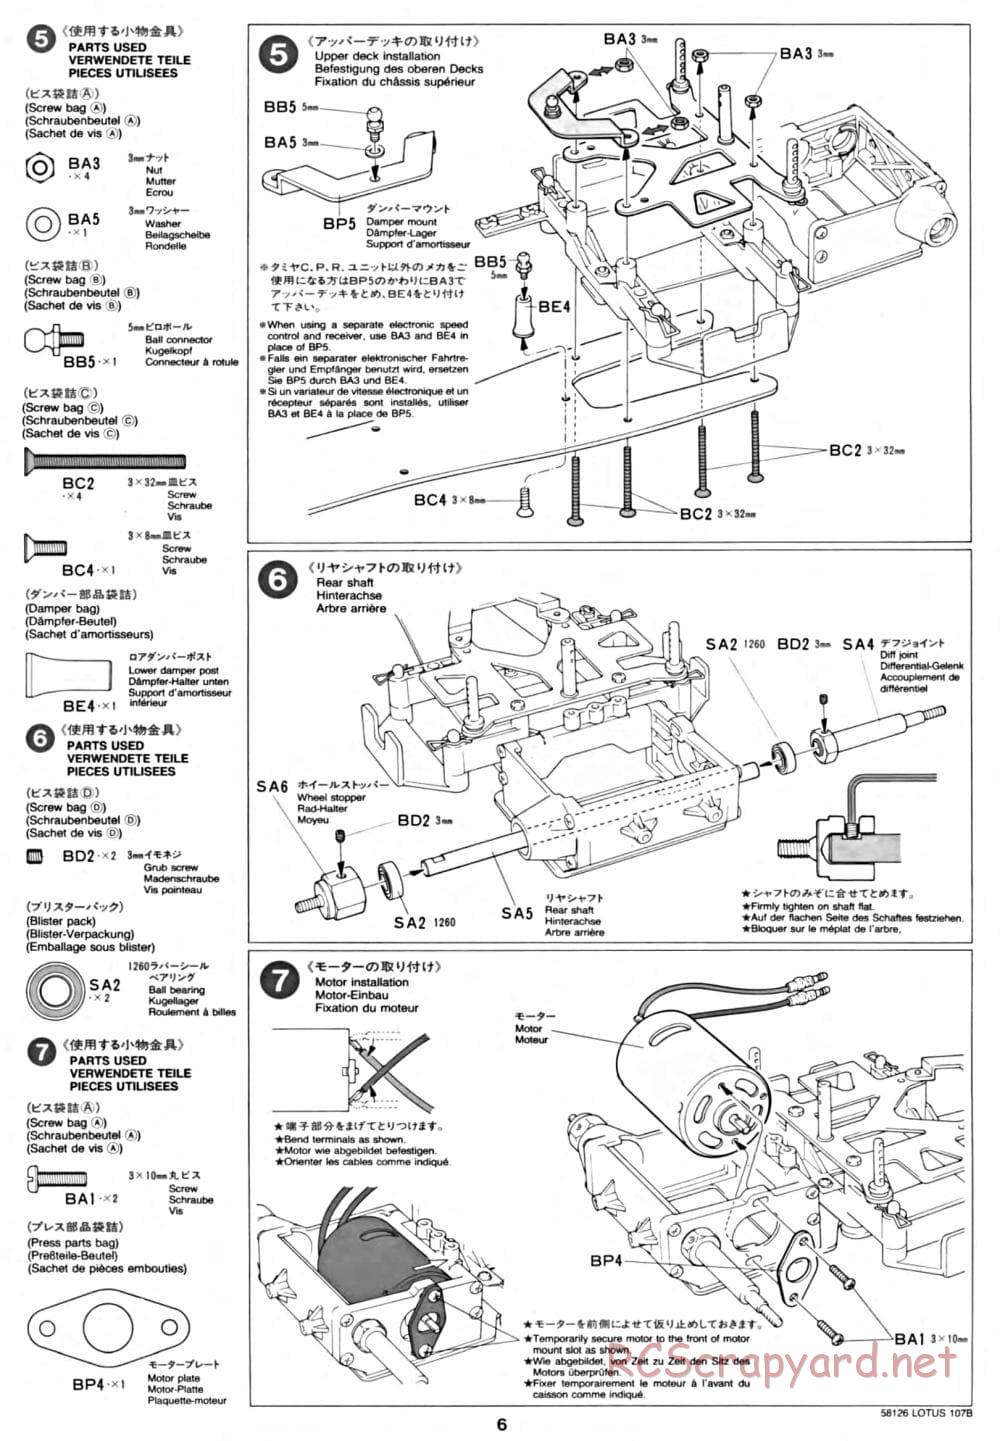 Tamiya - Lotus 107B Ford - F103 Chassis - Manual - Page 6